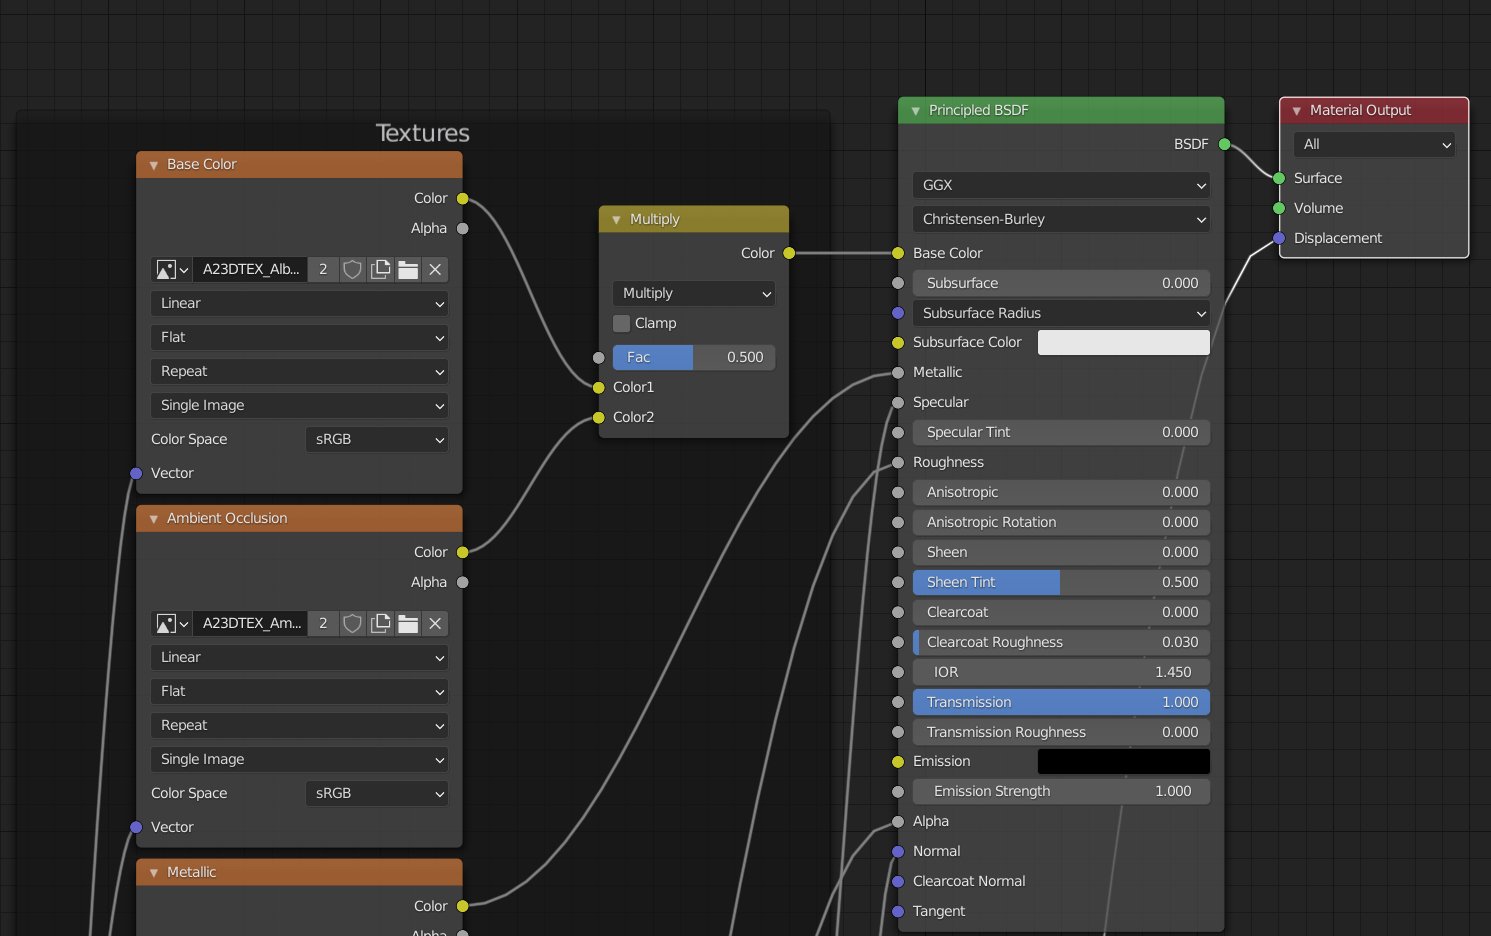 Albedo/Base Color Map setup in Blender for PBR Texture